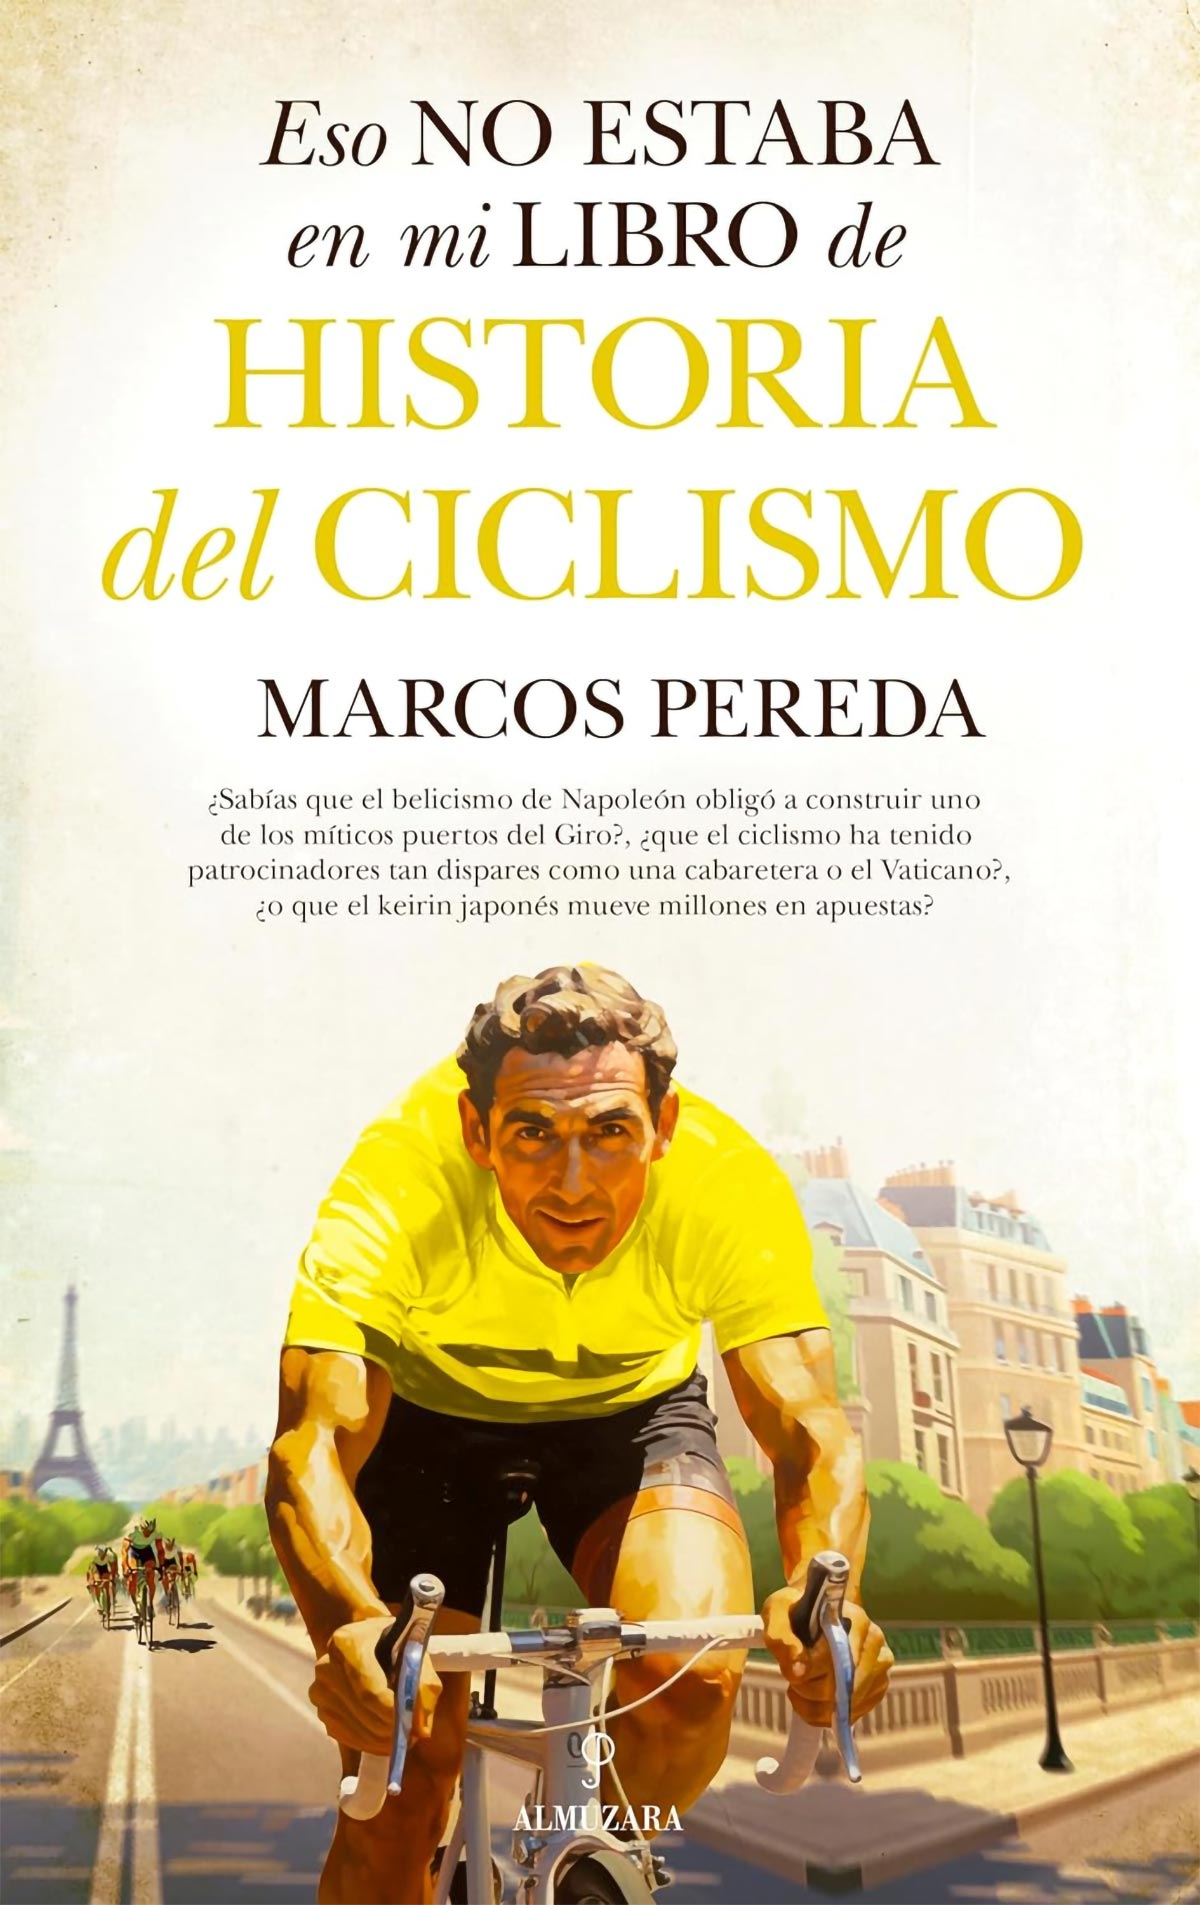 Almuzara publica 'Eso no estaba en mi libro de historia del ciclismo' de Marcos Pereda, un libro de lectura muy recomendada